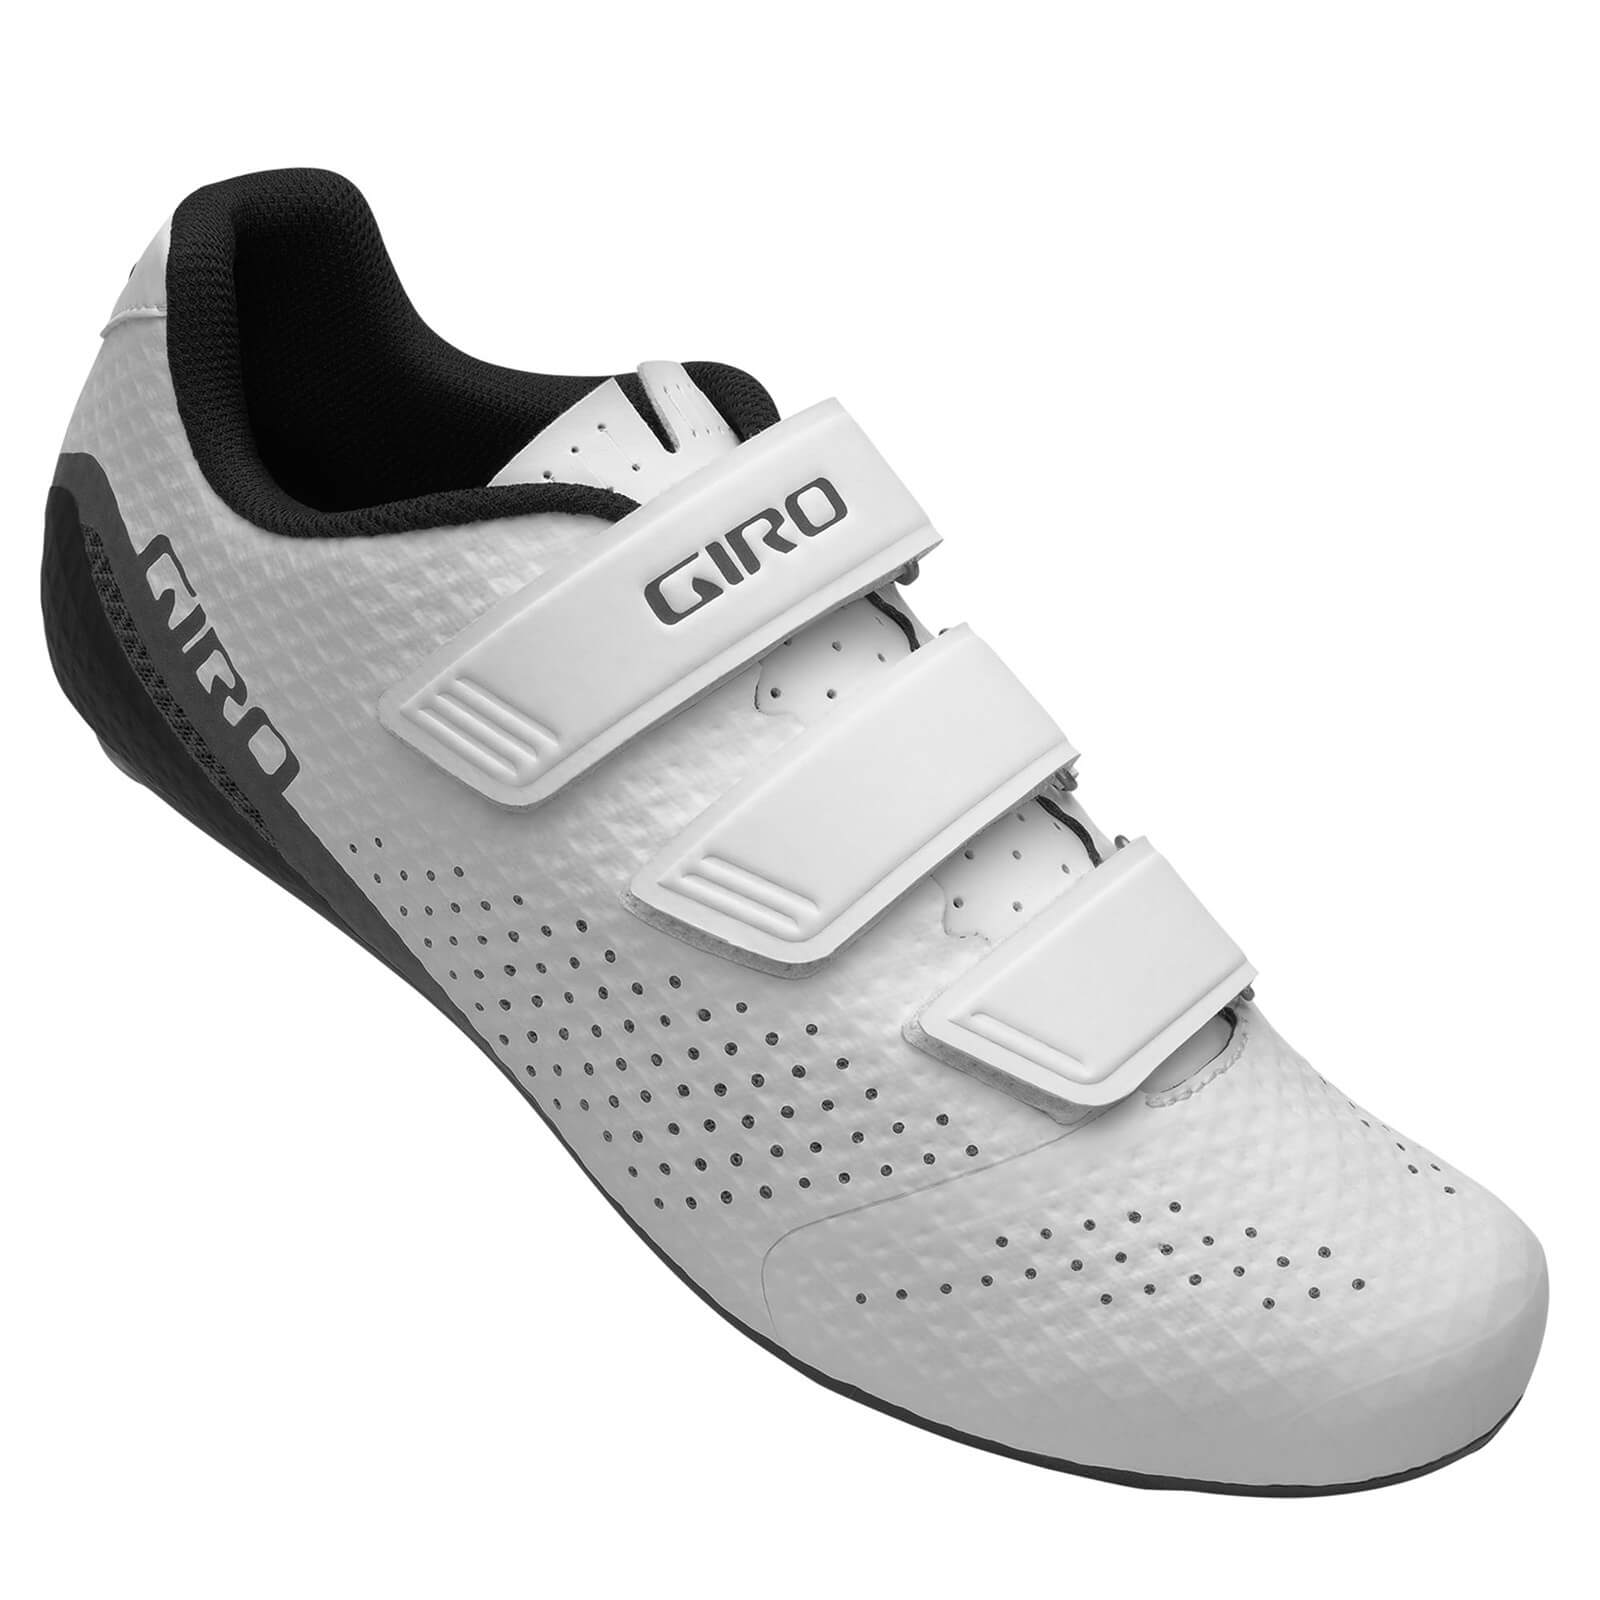 Giro Stylus Road Shoes - EU 42 - White